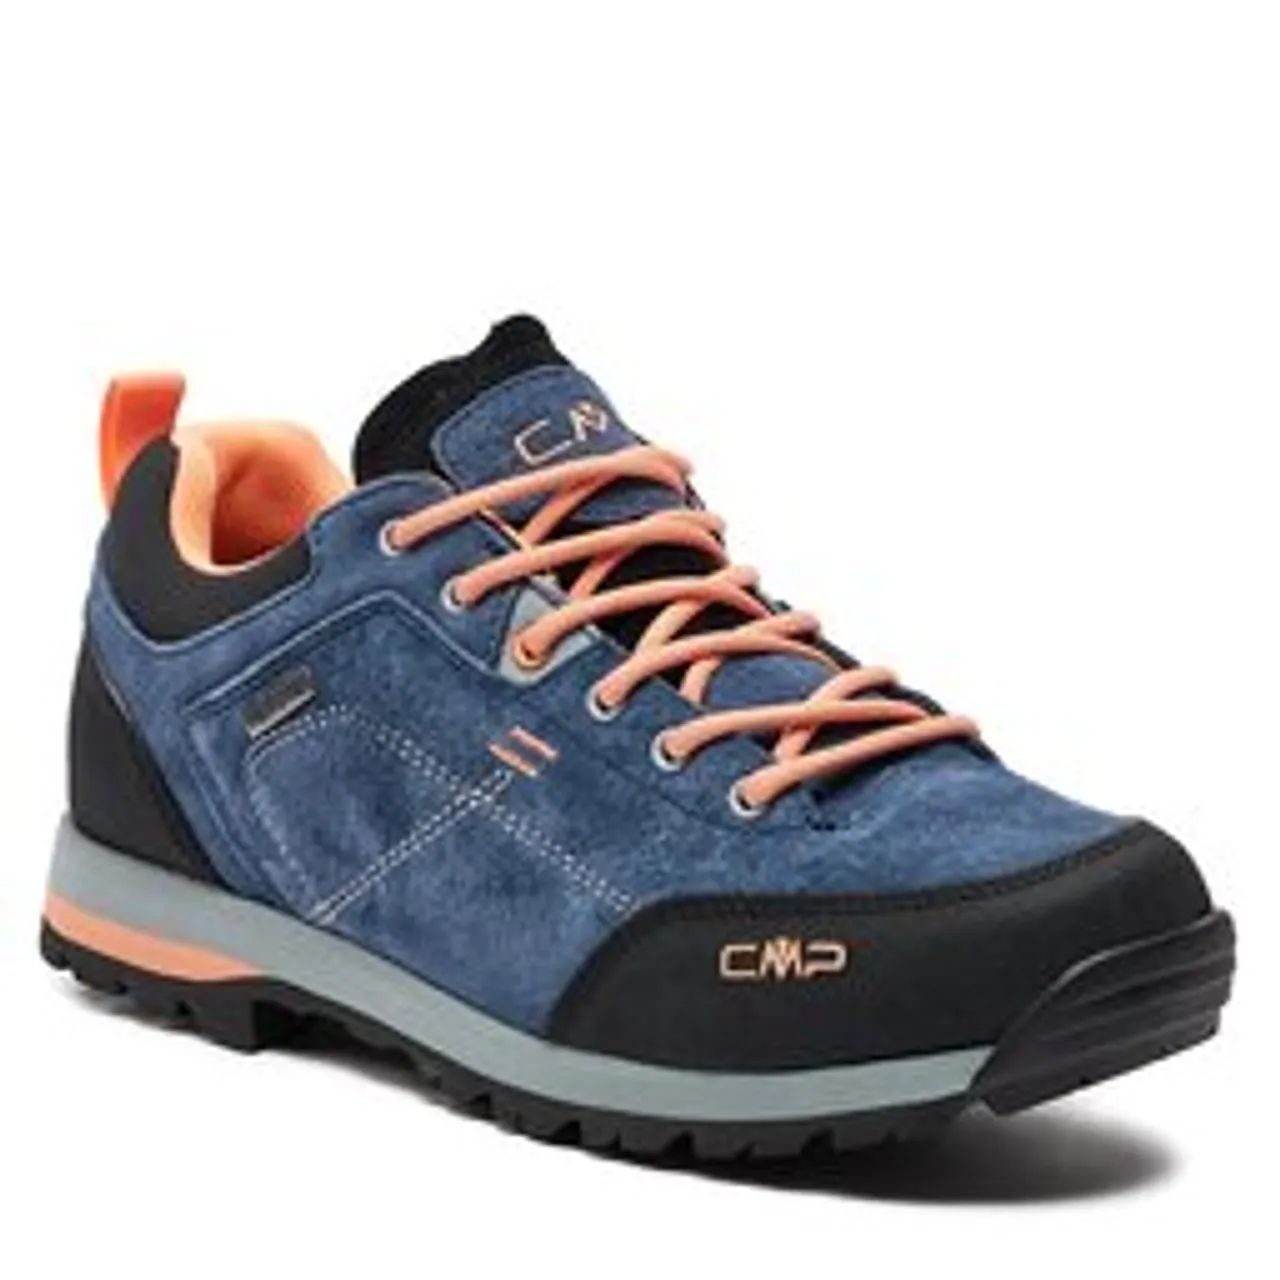 Trekkingschuhe CMP Alcor 2.0 Wmn Trekking Shoes 3Q18566 Blue Ink/Sunrise 03MP